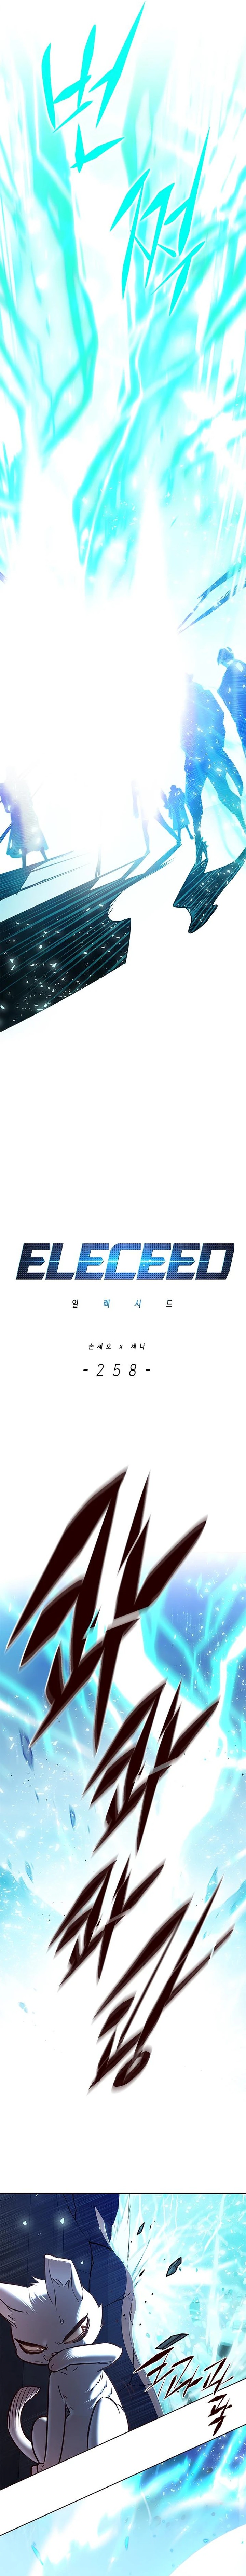 eleceed_258_2